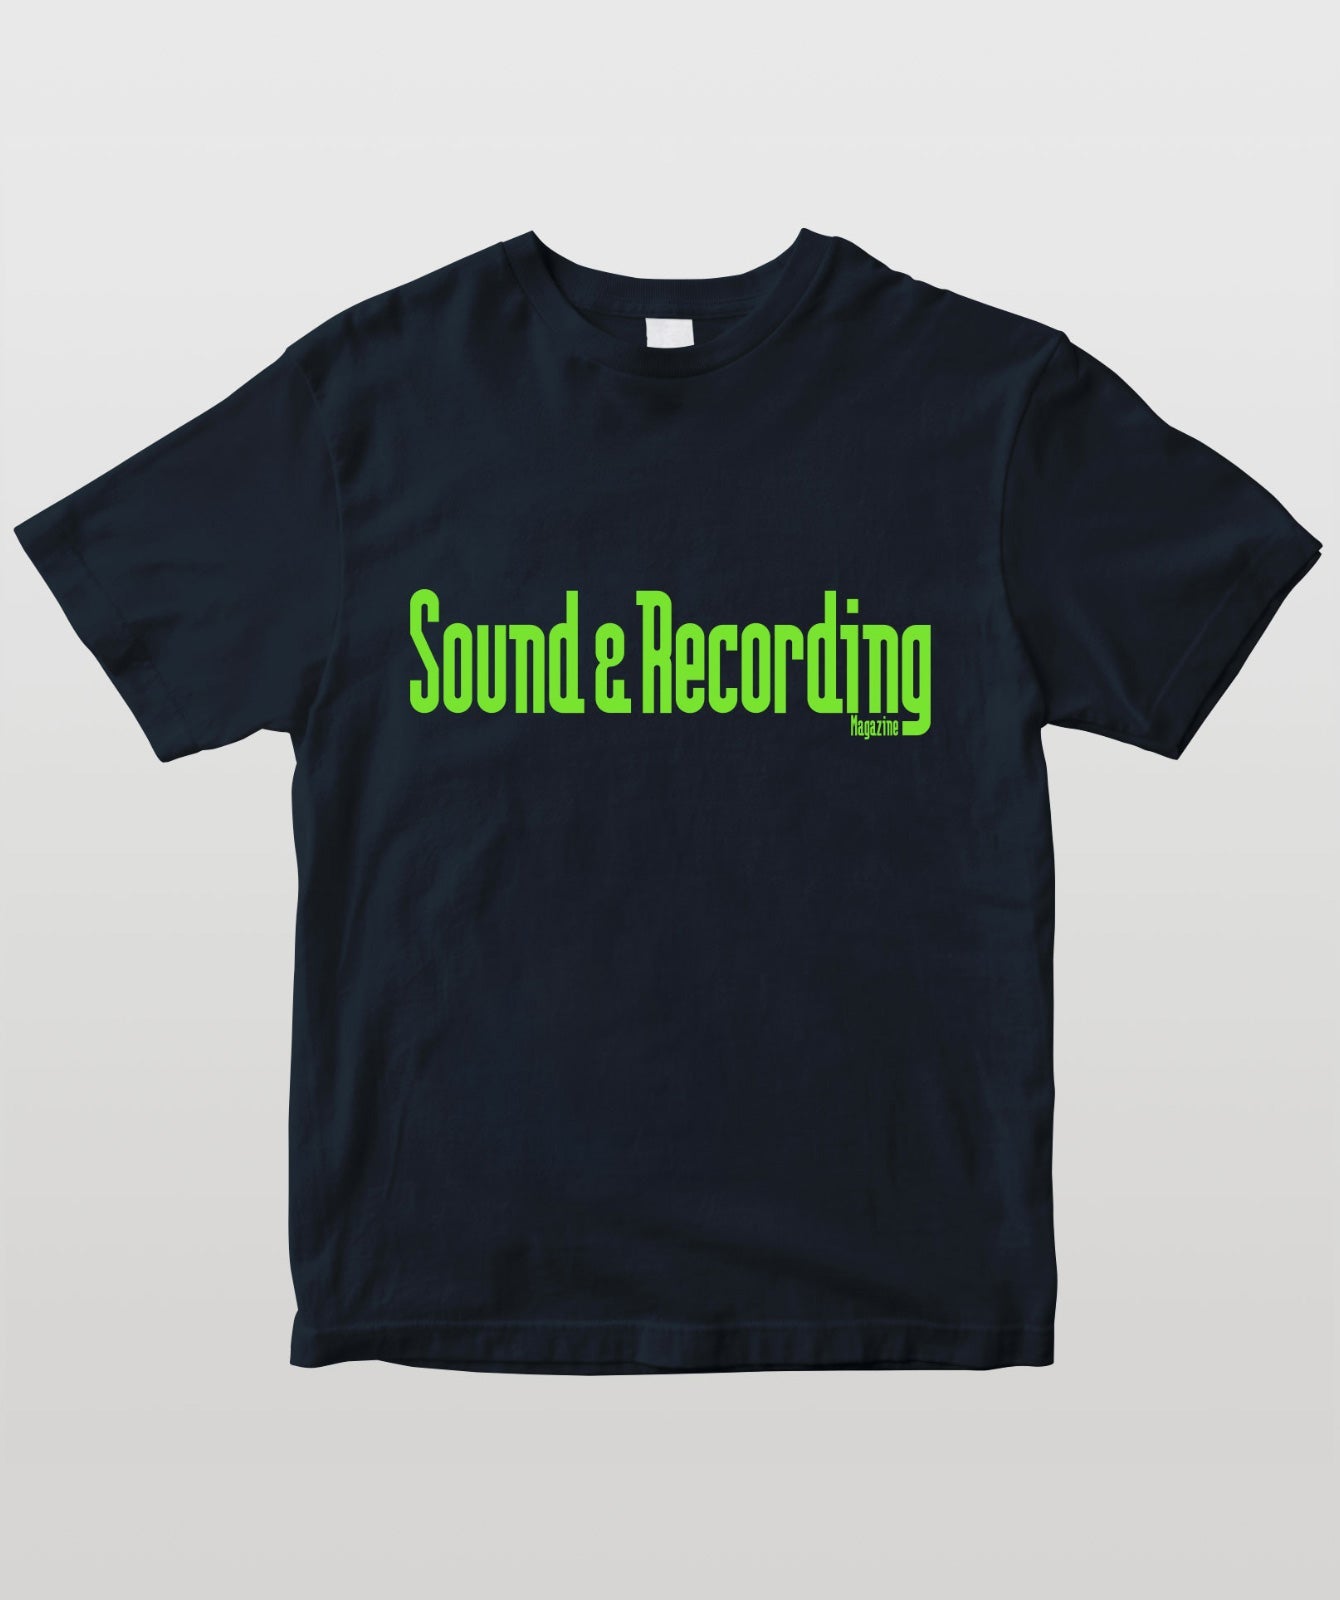 Sound & Recording Magazine オリジナルロゴ ネイビー